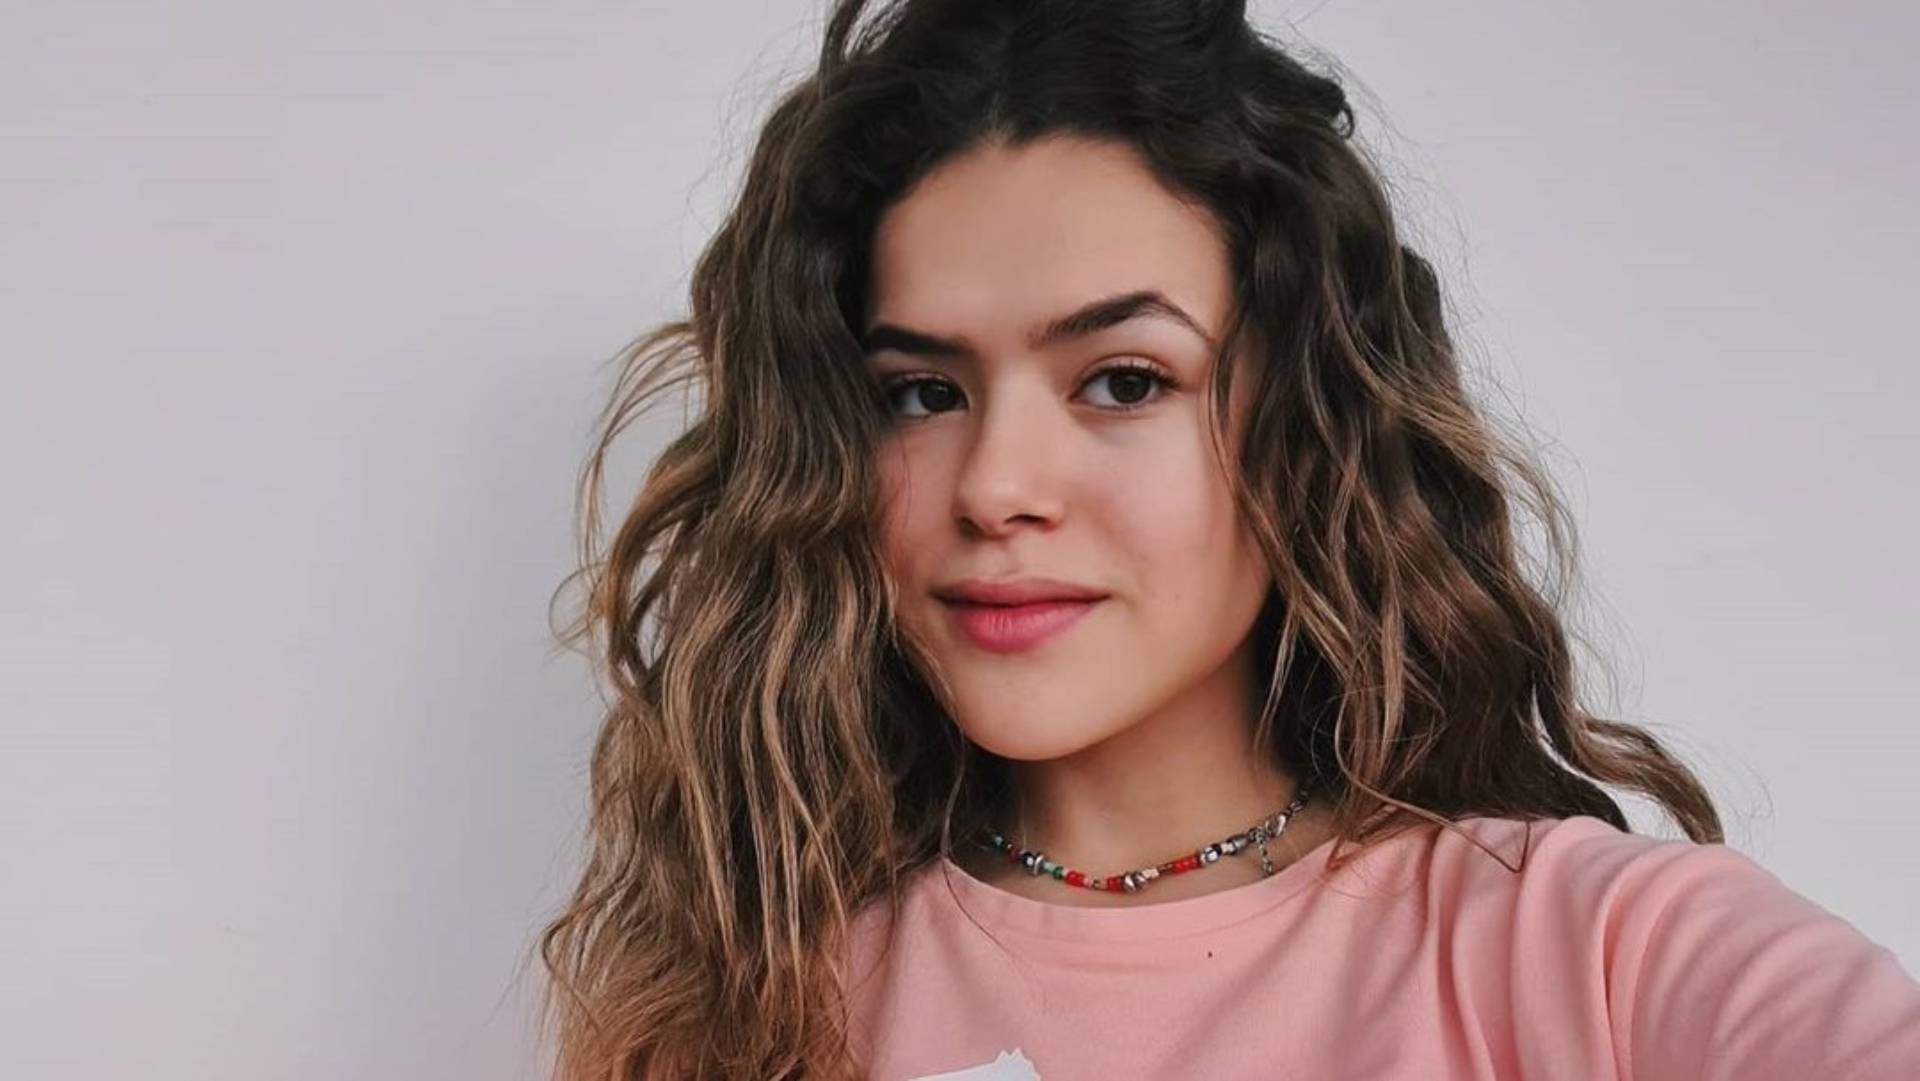 ‘De volta aos 15’: Livro de Bruna Vieira ganhará adaptação na Netflix